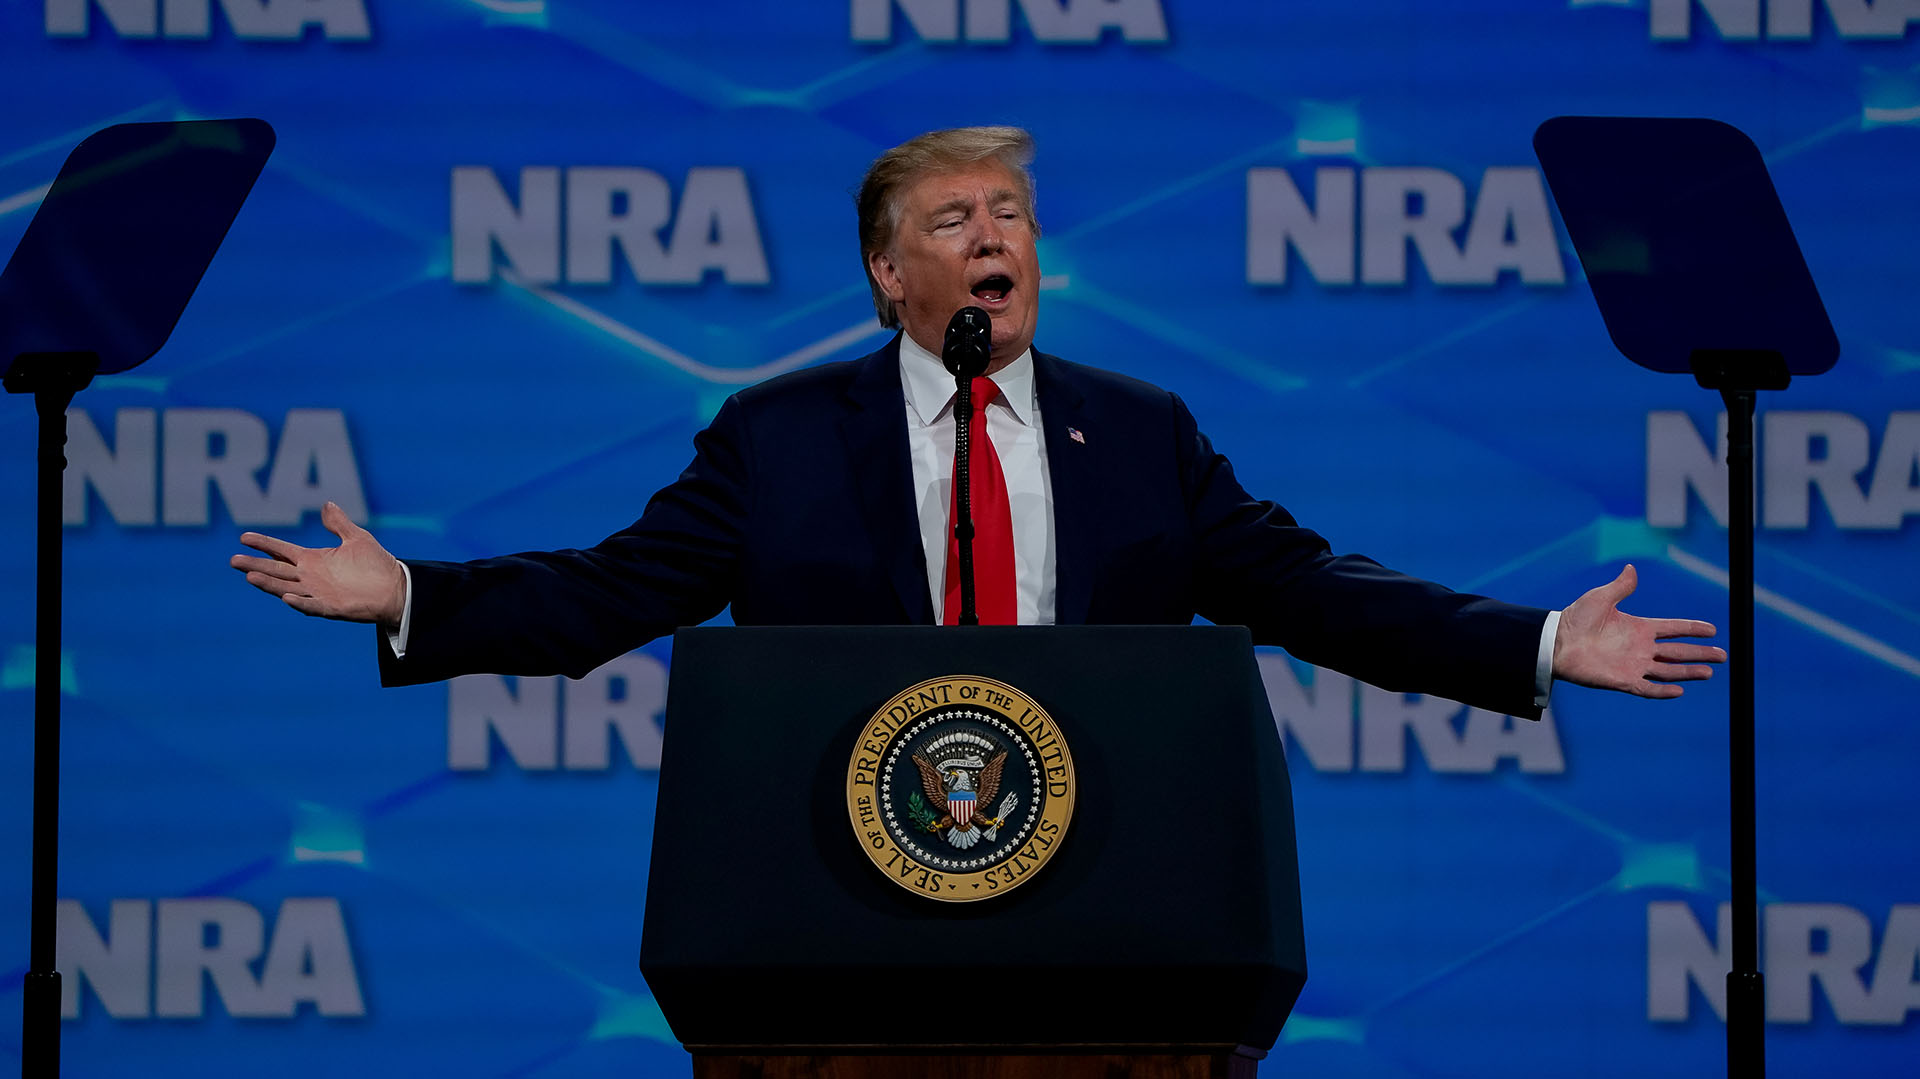 Foto de archivo: El ex presidente de Estados Unidos Donald Trump se dirige a los reunidos en la convención anual de la Asociación Nacional del Rifle (NRA) en Indianápolis, Indiana, Estados Unidos, 26 de abril de 2019 (REUTERS/Bryan Woolston)